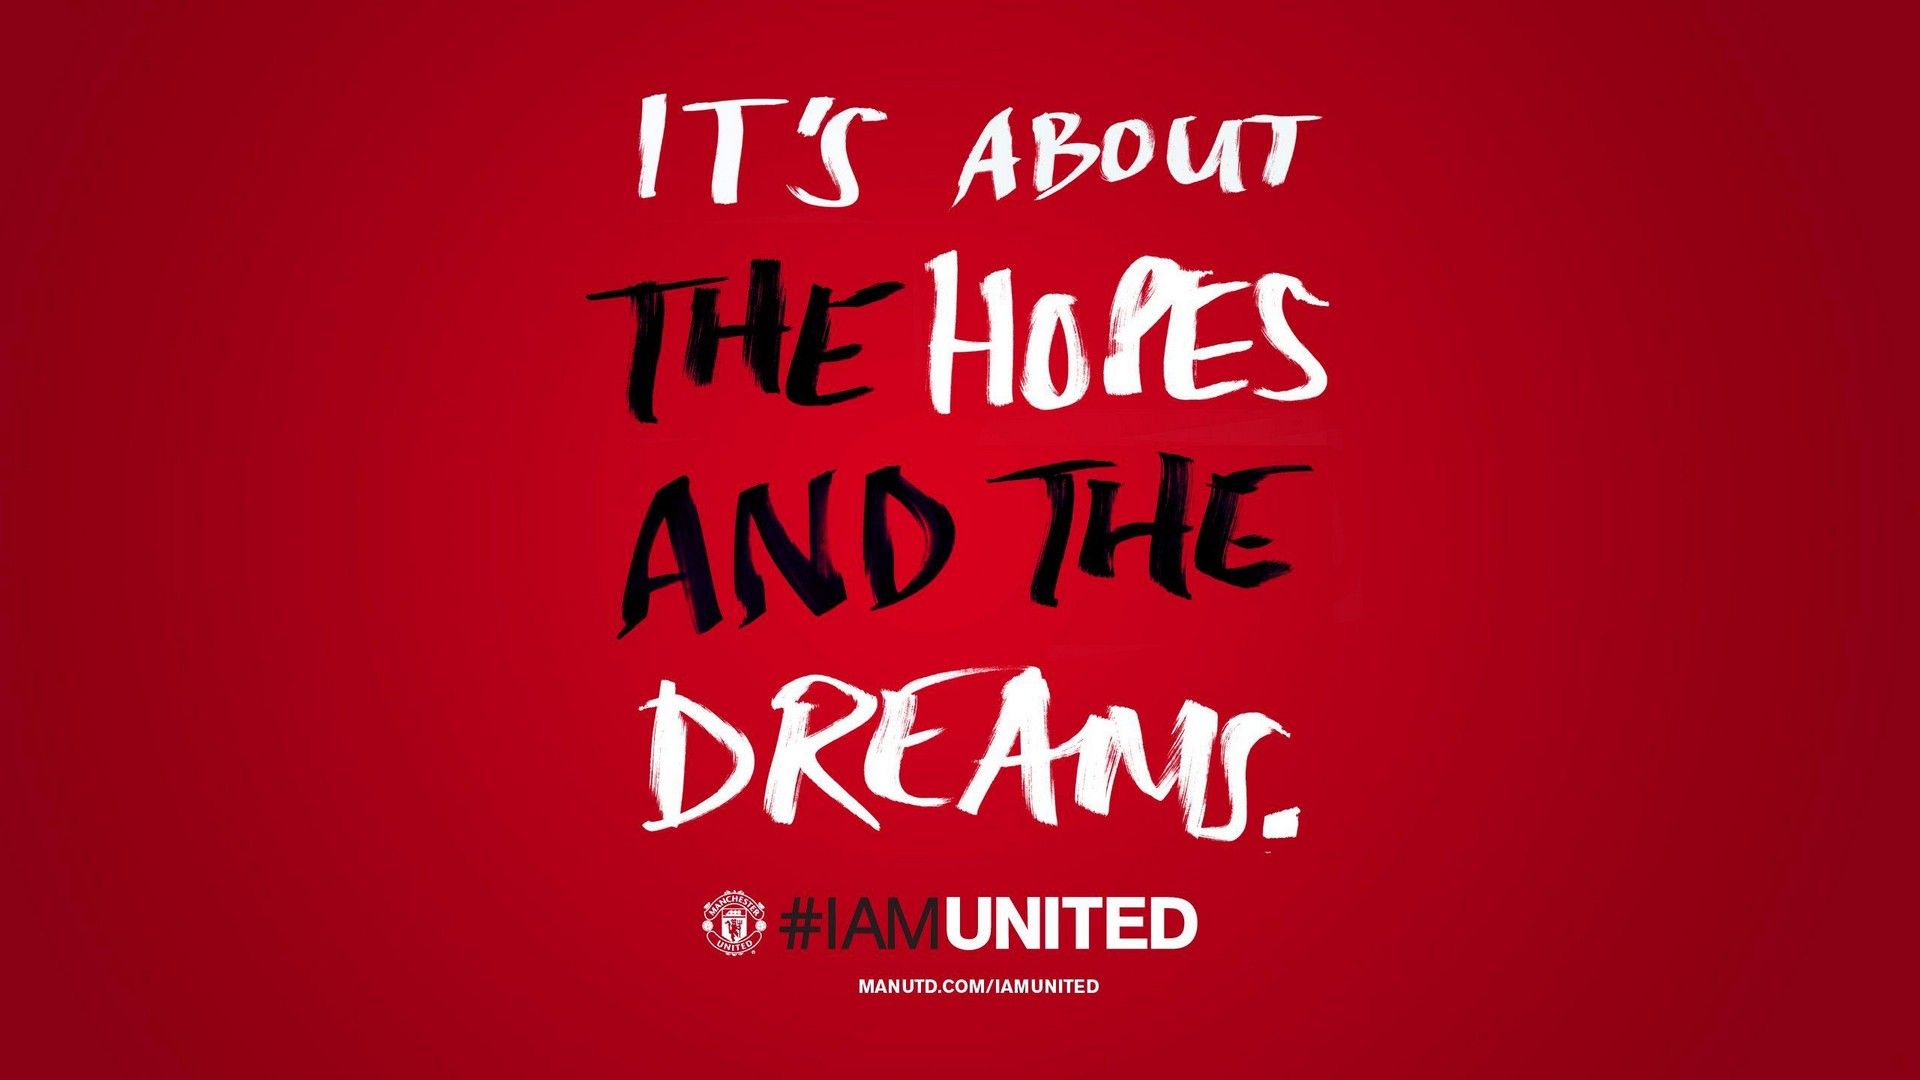 HD Manchester United Wallpaper. Best Football Wallpaper HD. Manchester united wallpaper, Manchester united logo, Manchester united